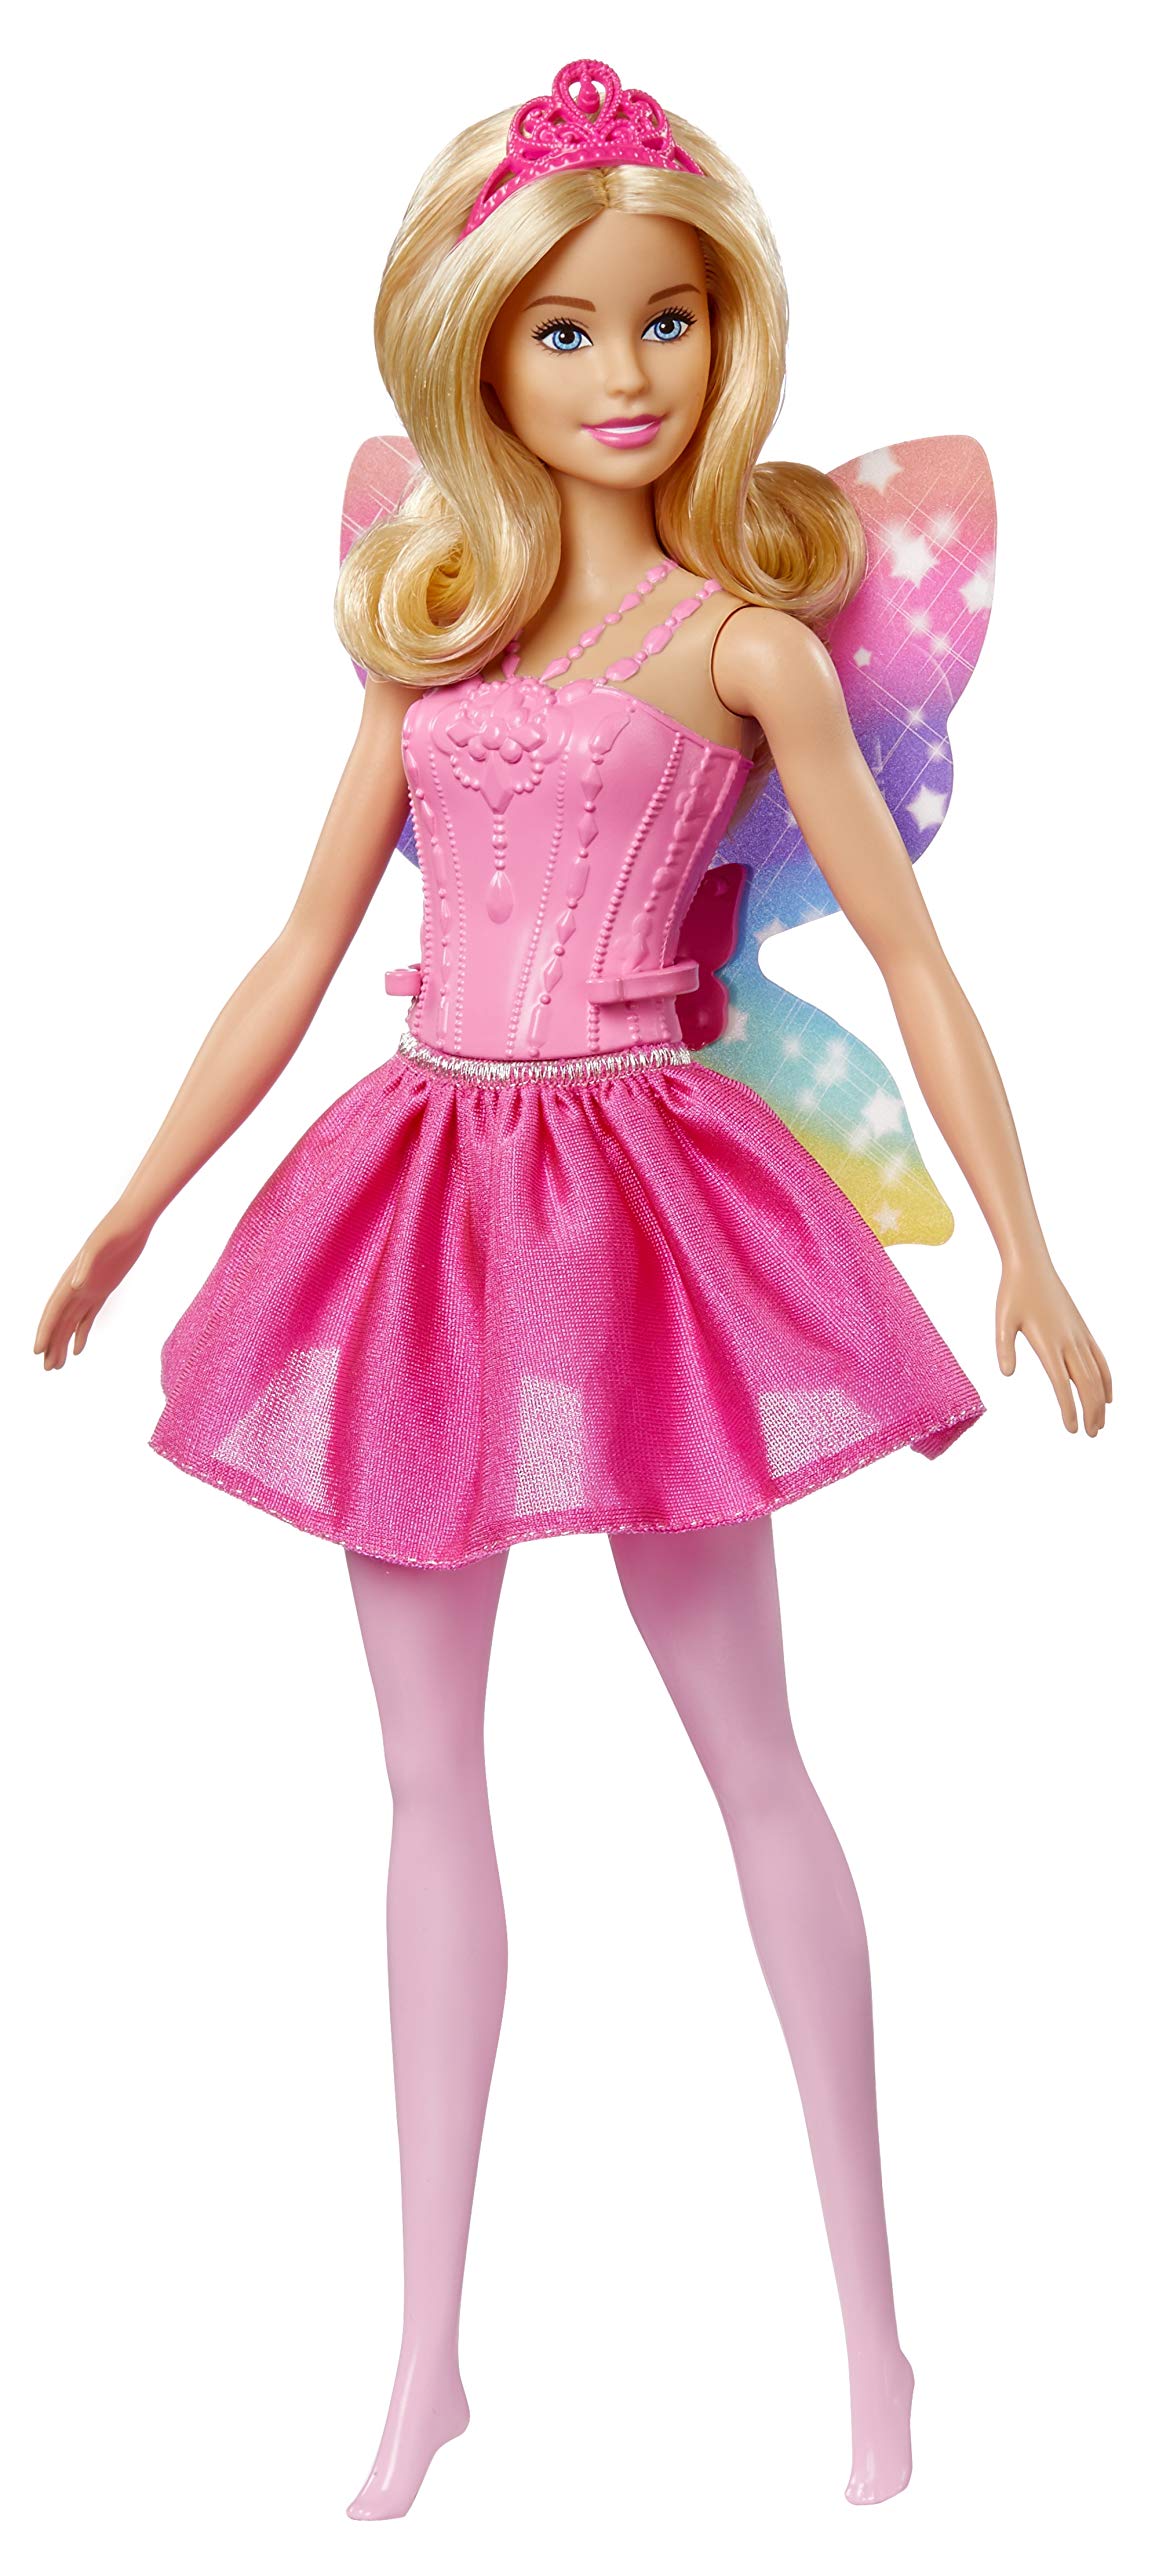 Mua Barbie Dreamtopia Fairy Doll with Wings (Mattel FWK85) trên Amazon ...